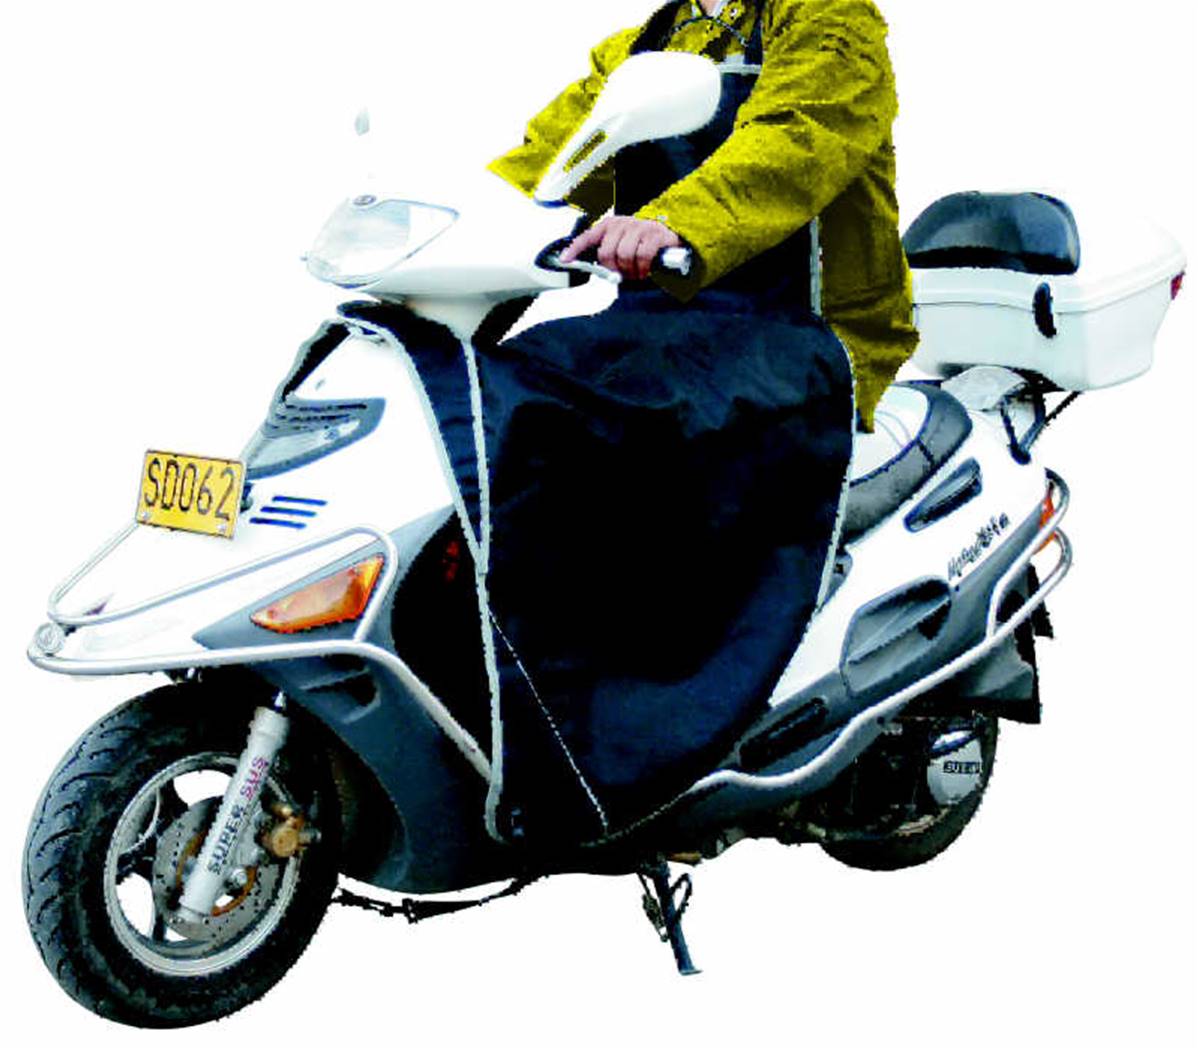 Tablier - Housse Moto 50cc